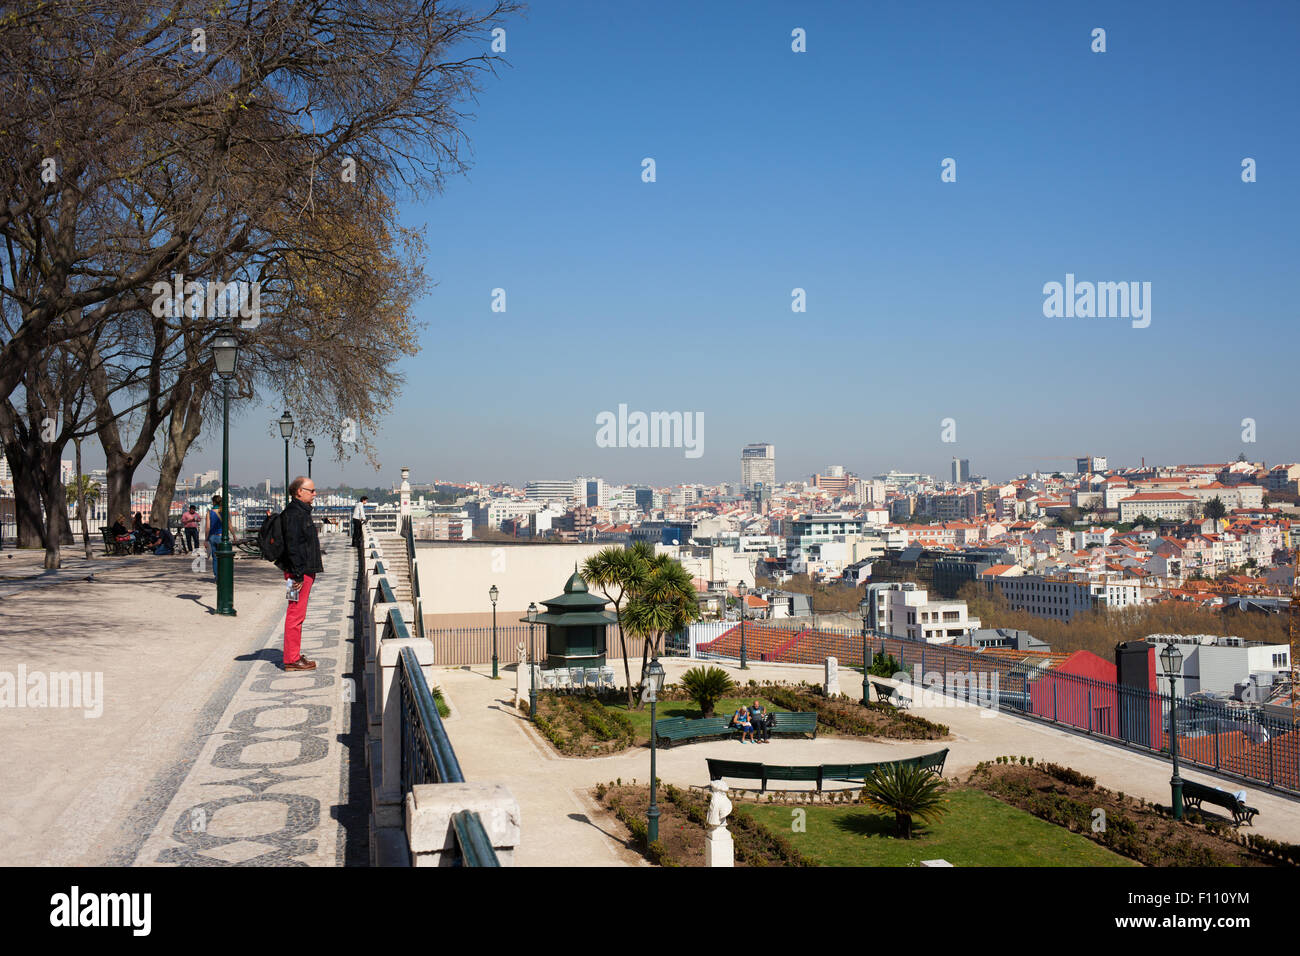 Lisbon cityscape in Portugal from the Garden of San Pedro de Alcantara (Portuguese: Miradouro de Sao Pedro de Alcantara). Stock Photo